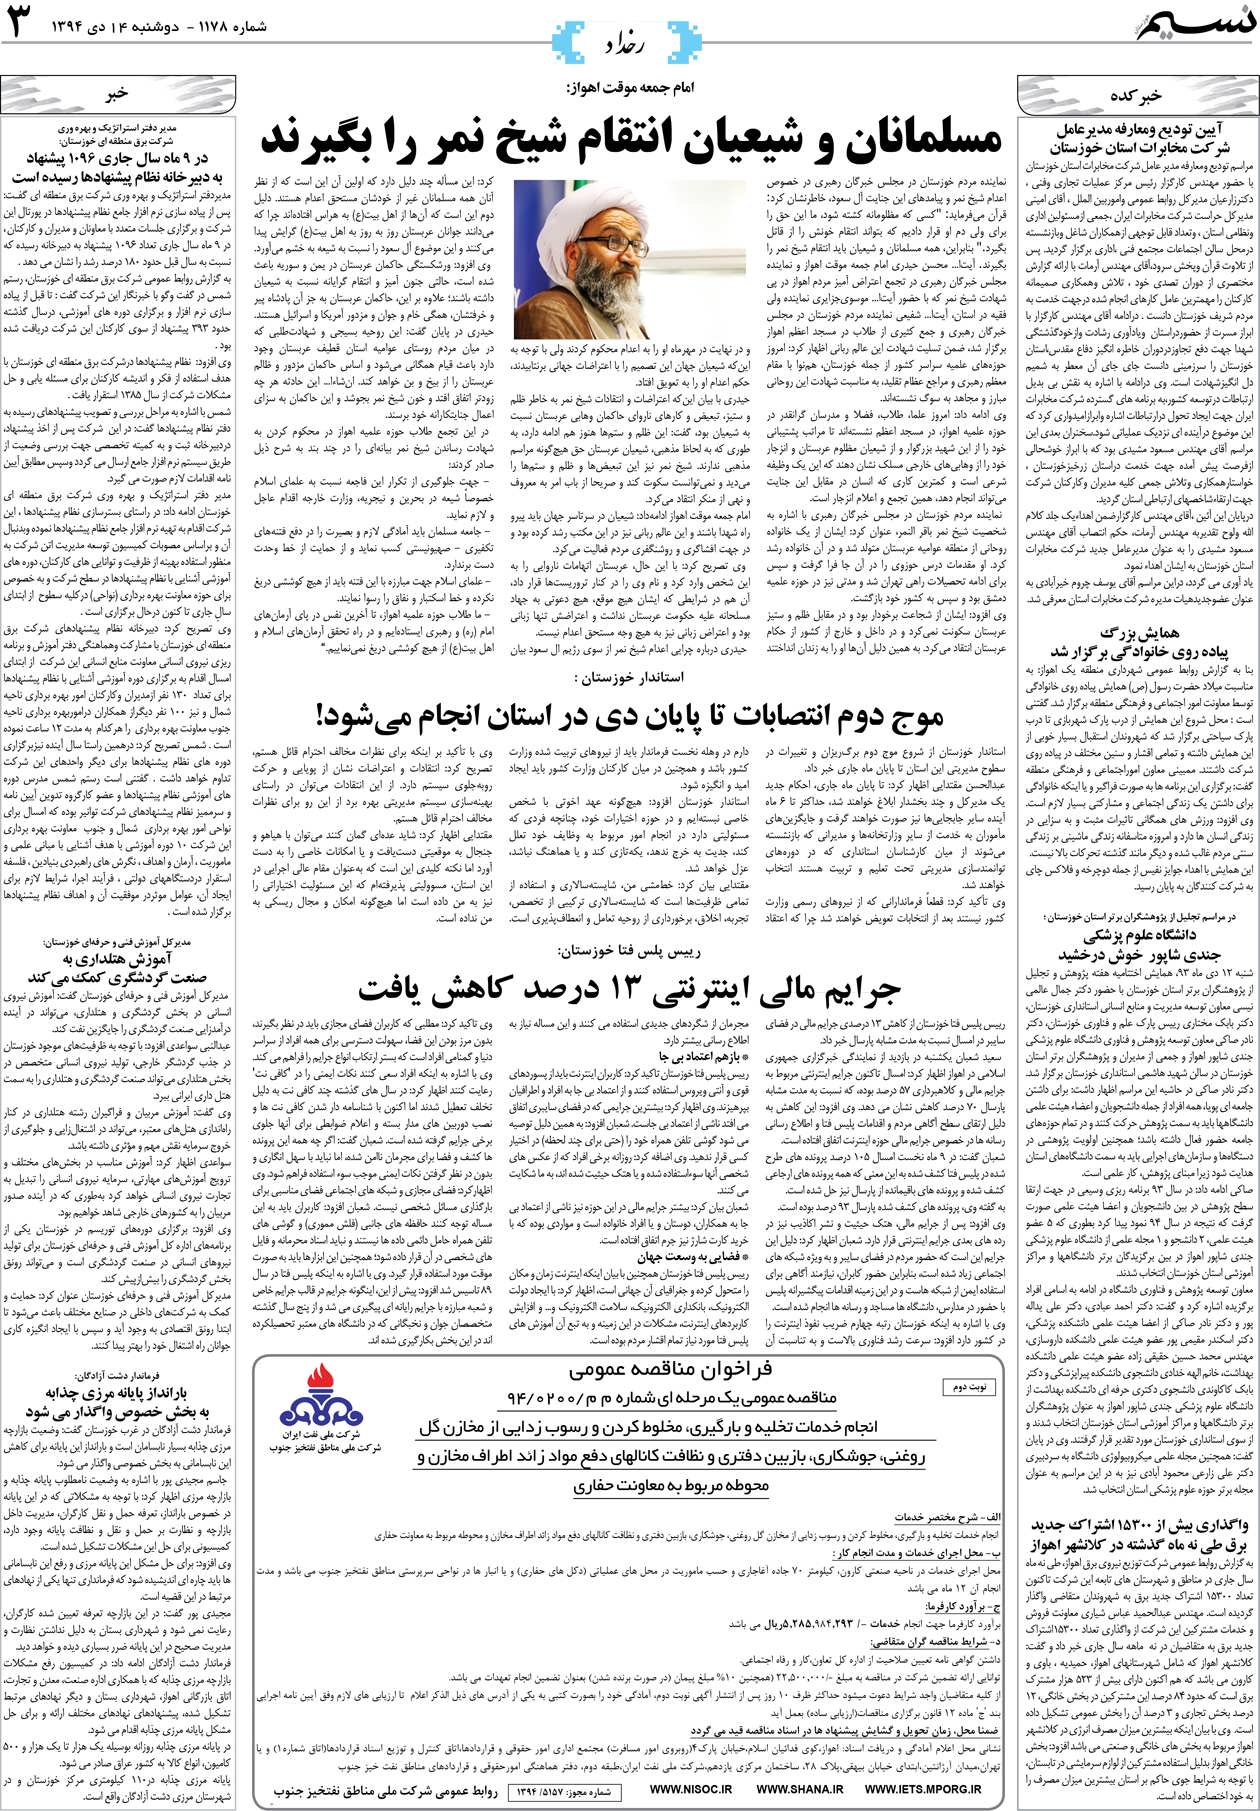 صفحه رخداد روزنامه نسیم شماره 1178